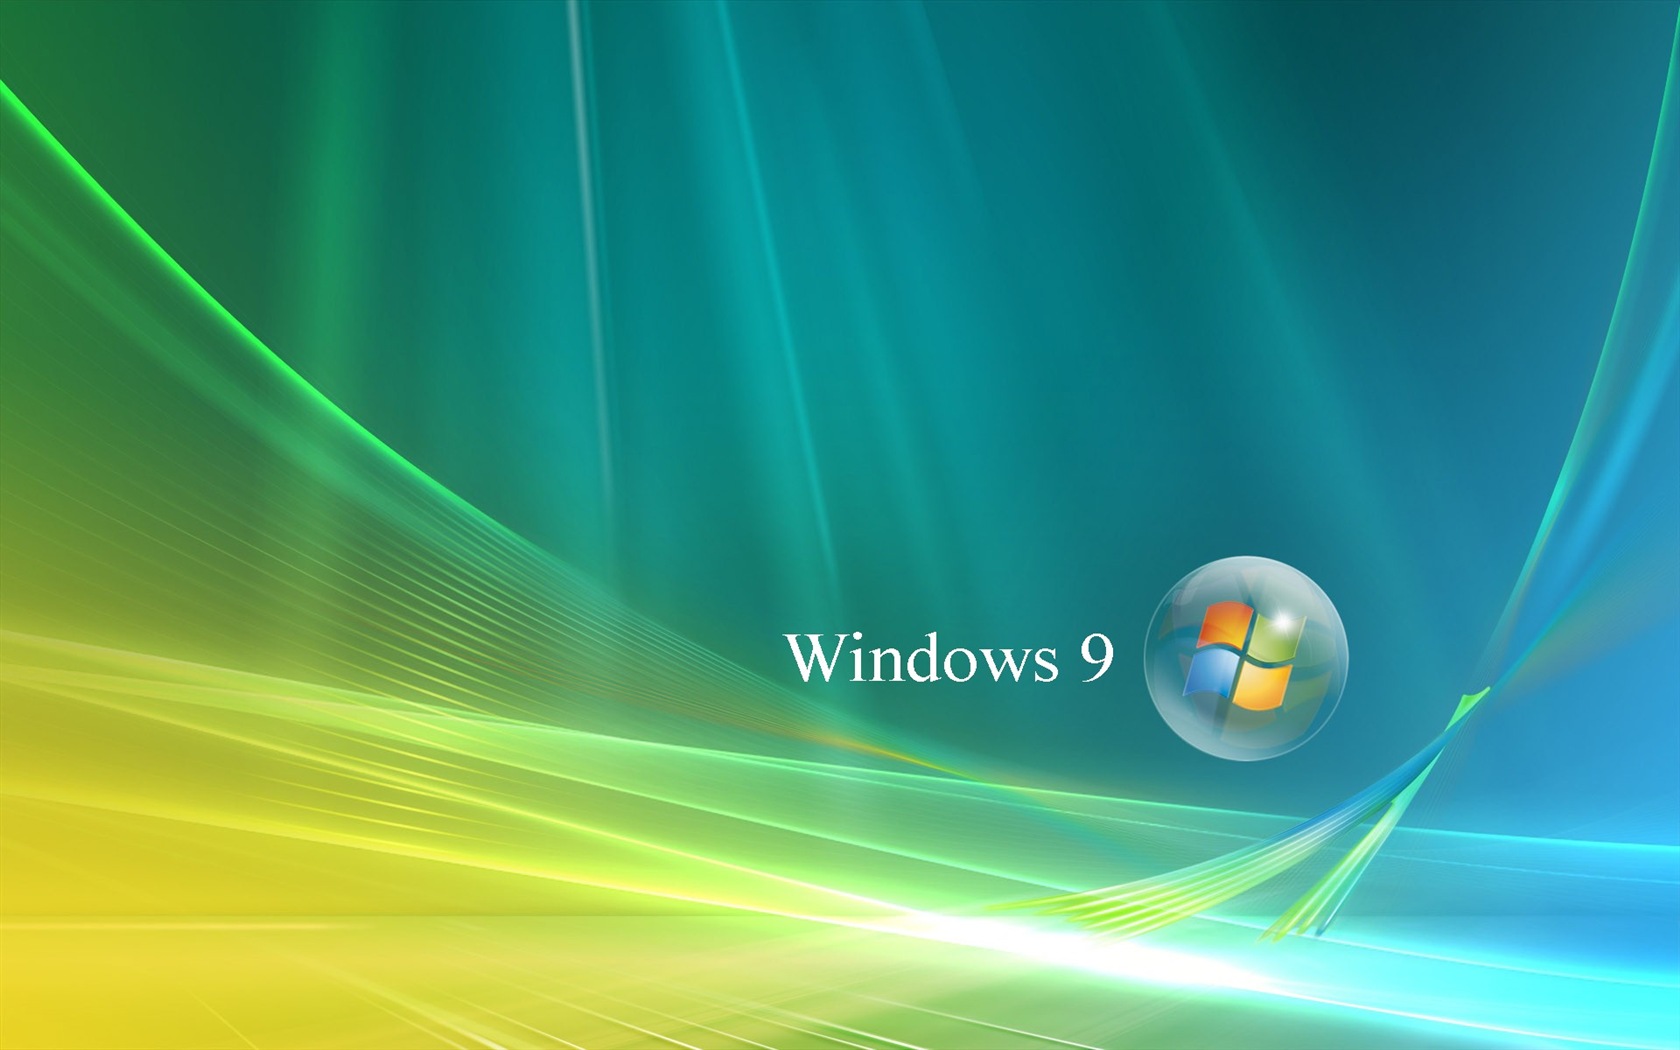 微软 Windows 9 系统主题 高清壁纸20 - 1680x1050